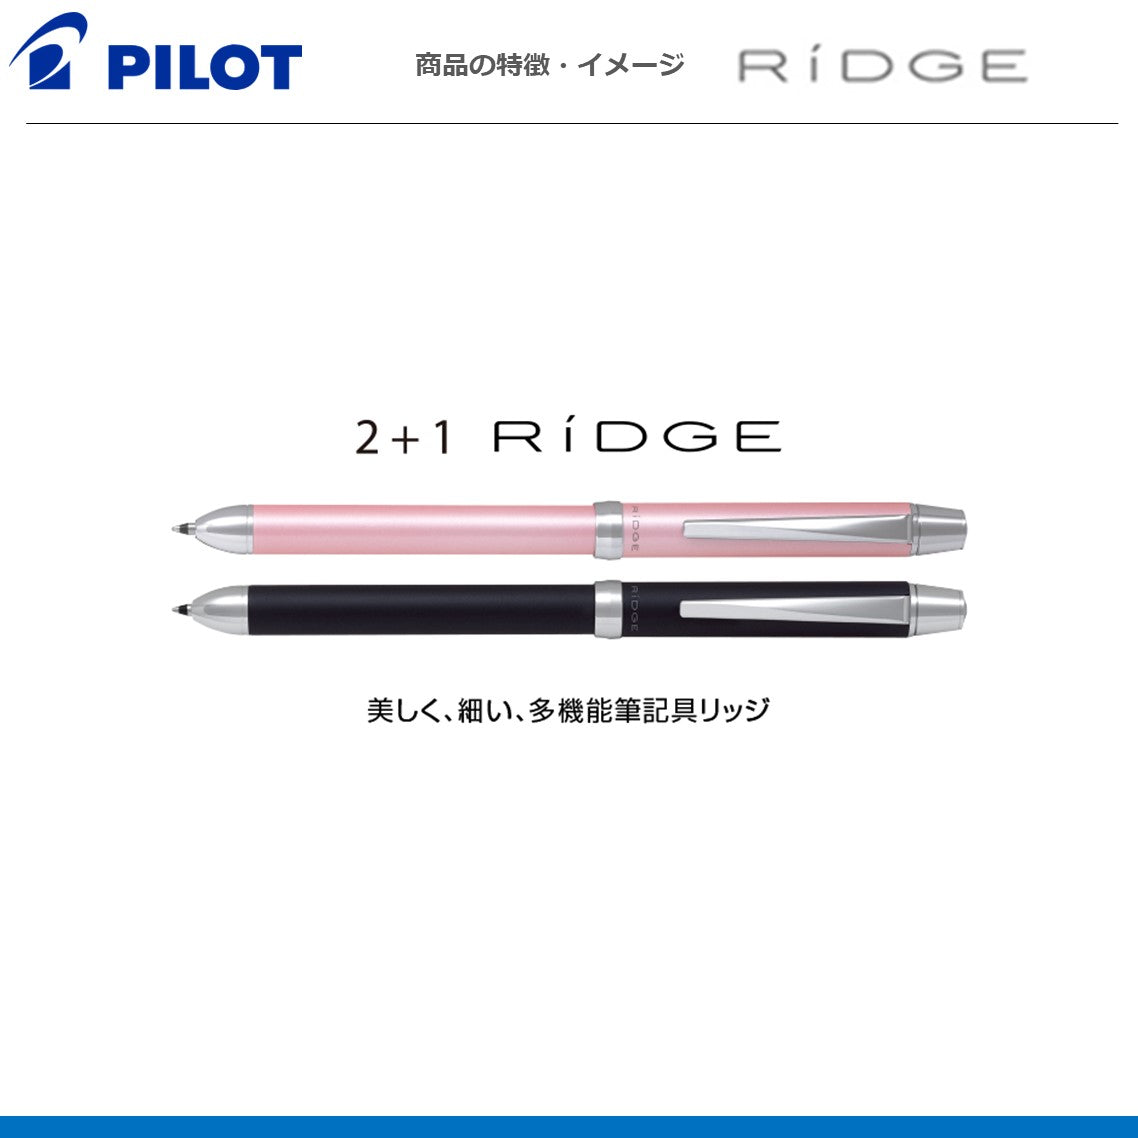 多機能筆記具 ツープラスワンリッジレザー RIDGE
BTHR-3SL